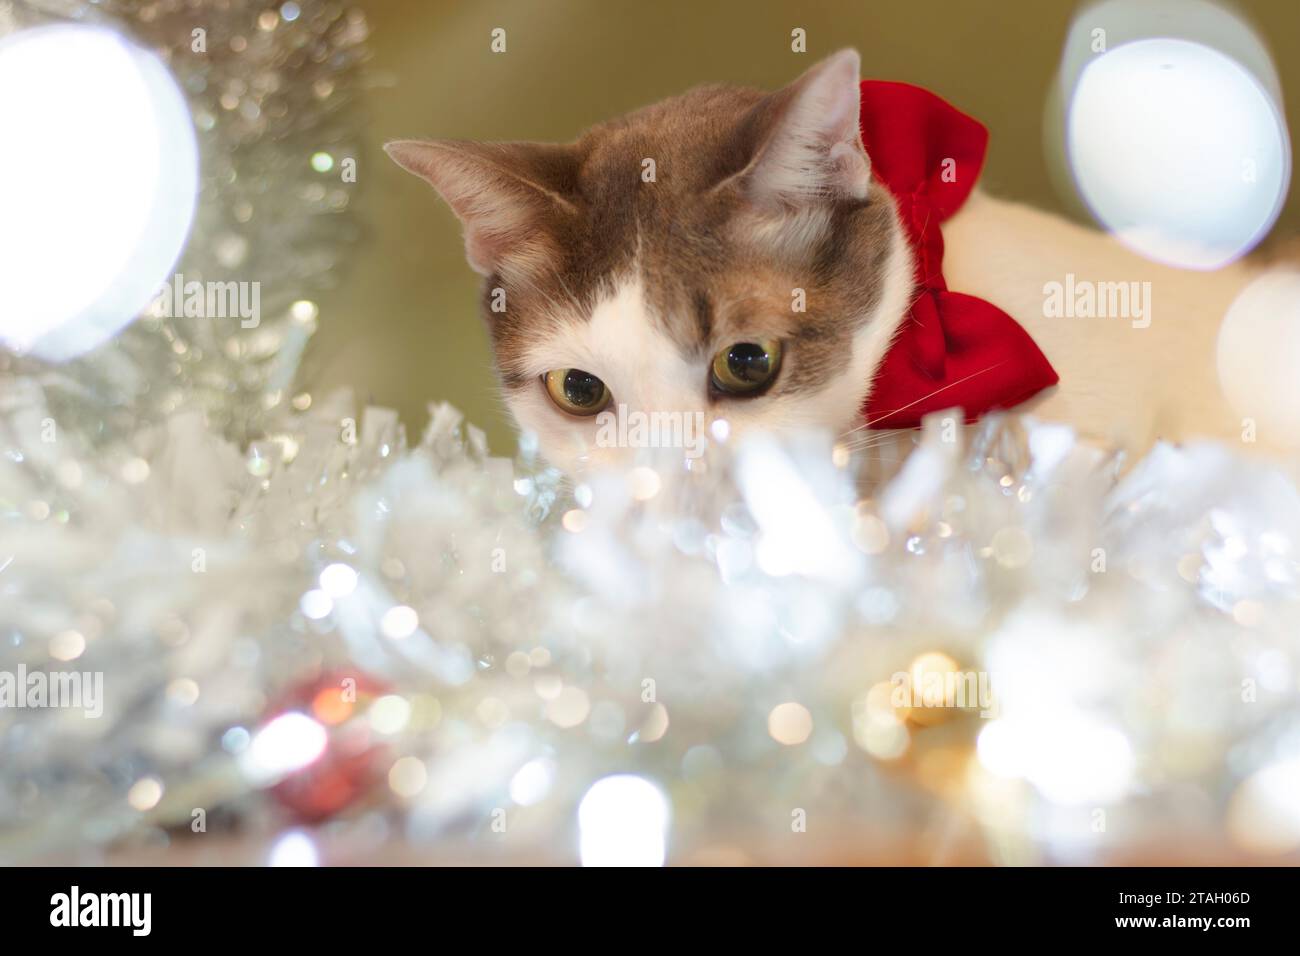 Feiern Sie Weihnachten mit einer weißen Katze, die eine rote Schleife trägt. In einem warmen Haus Stockfoto